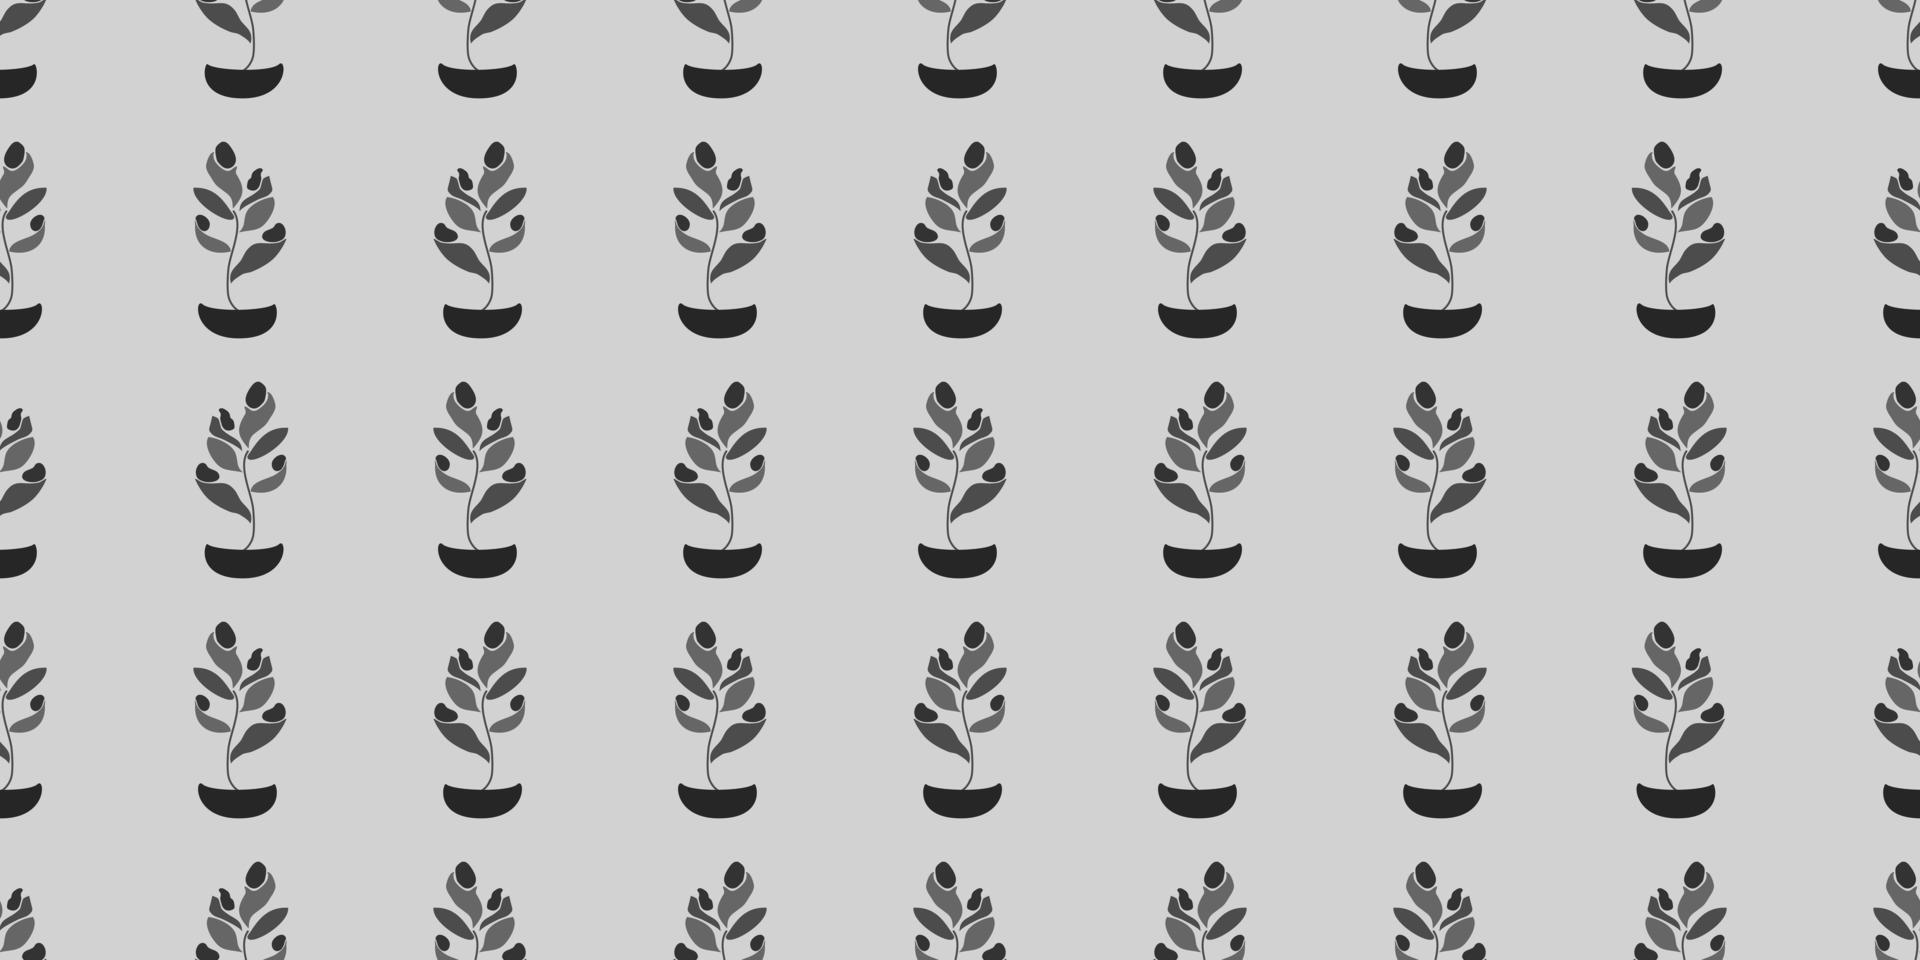 niedliche Blumen, Pflanzen Vektor nahtlose Muster. elegante Vorlage für Modedrucke, Stoffe, Textilien, Tapeten, Wandkunst, Einladung, Verpackung. einsatzbereit